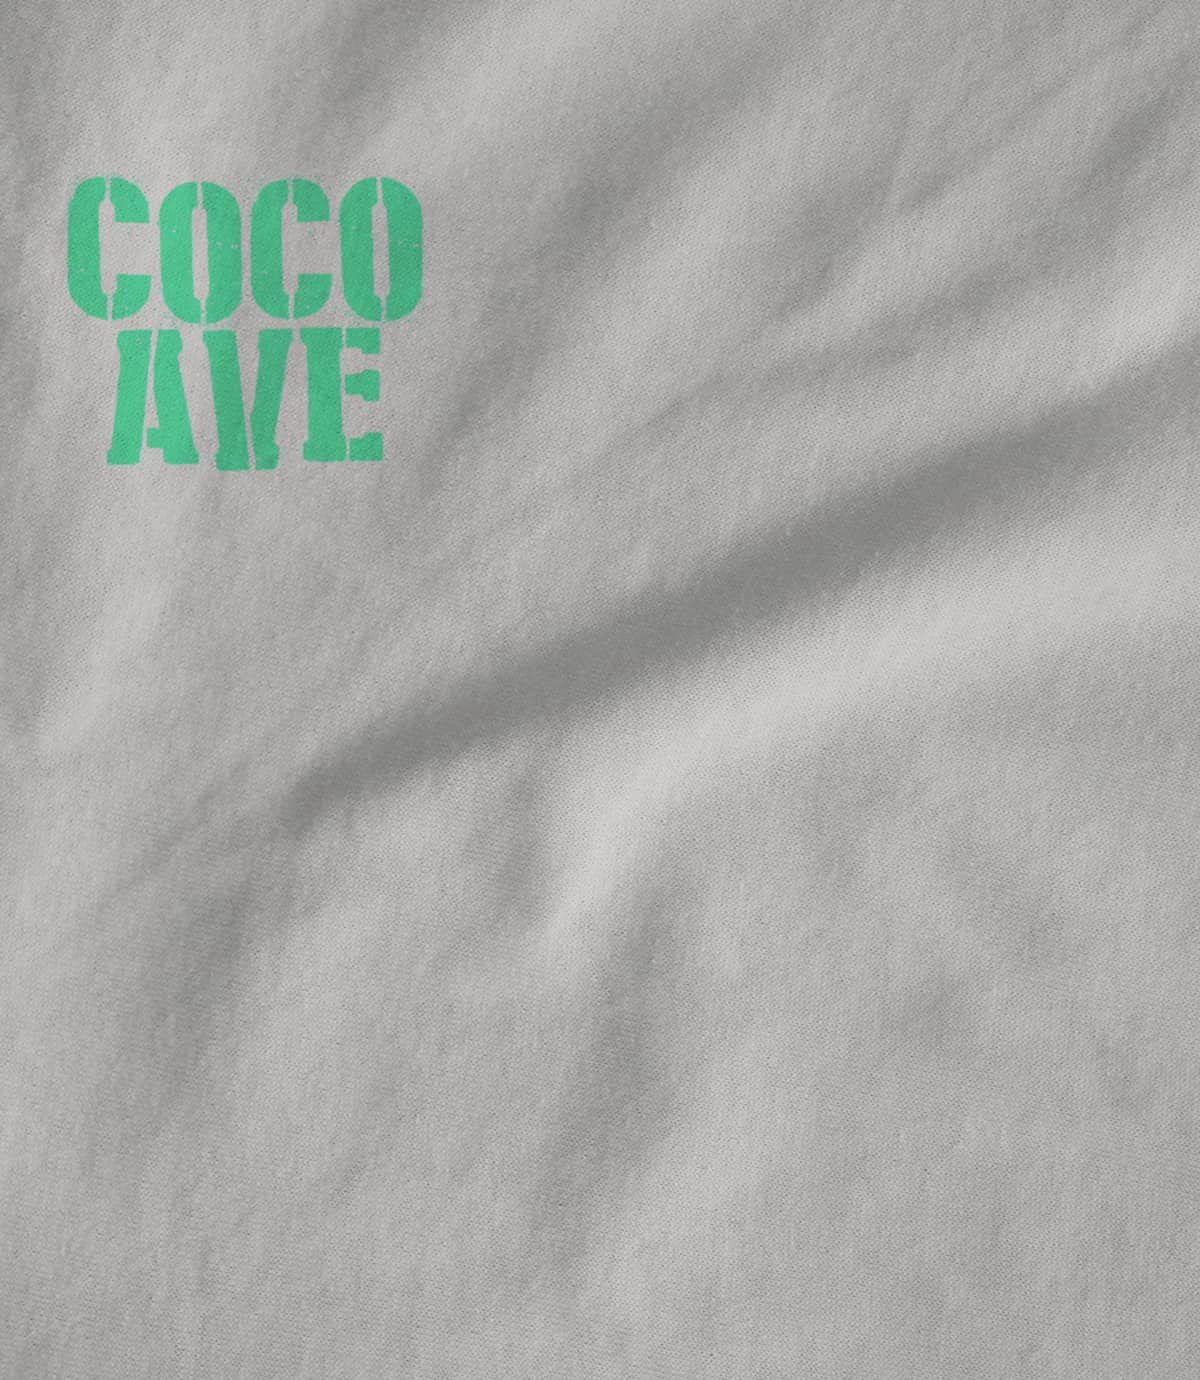 Coco Avenue